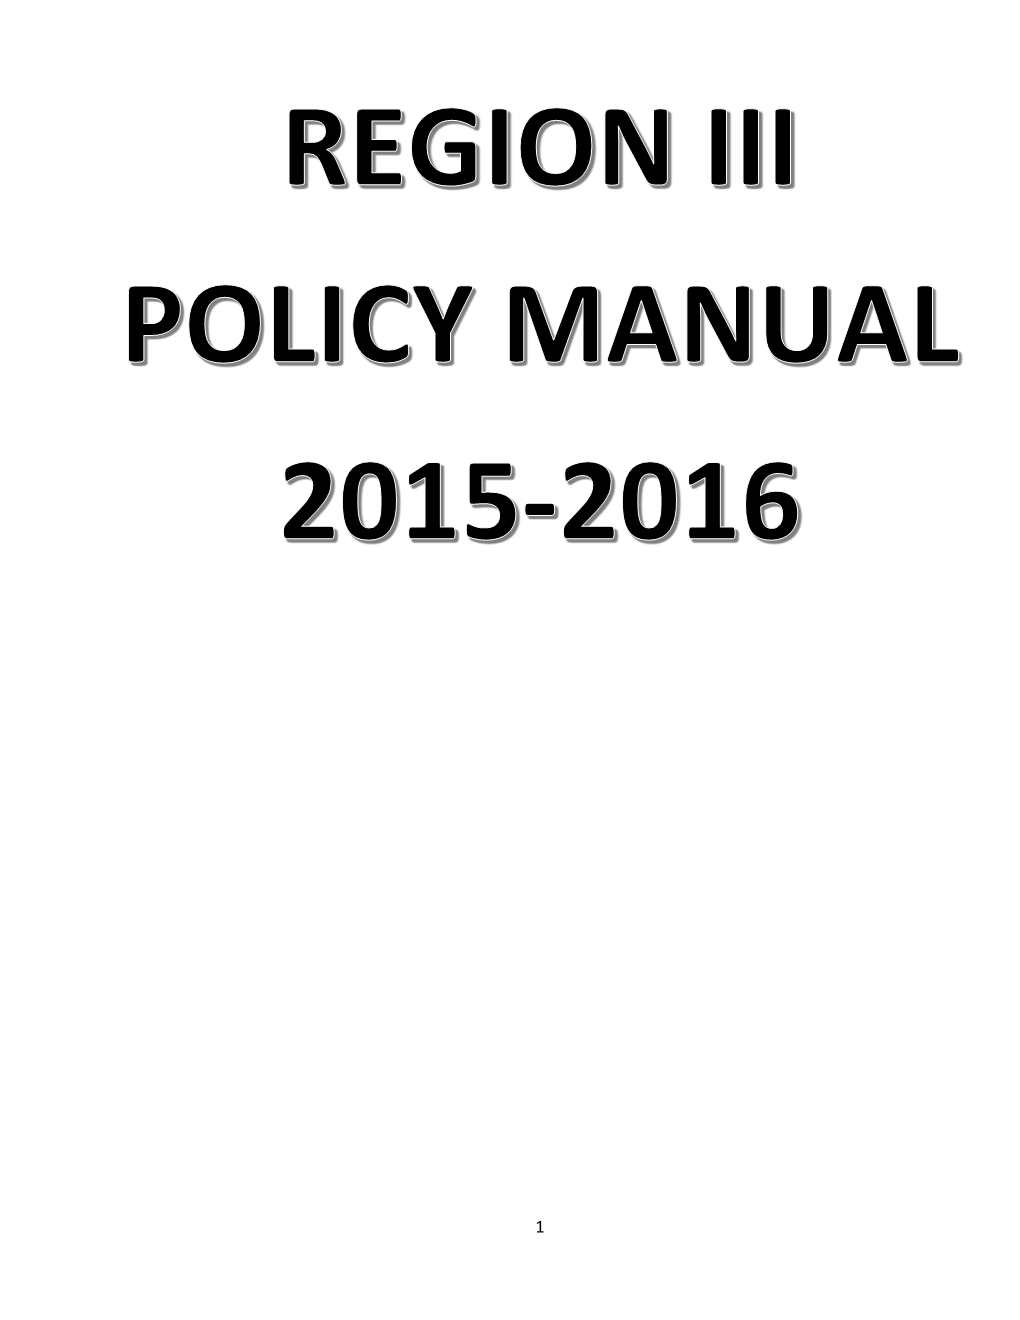 Region III Policy Manual